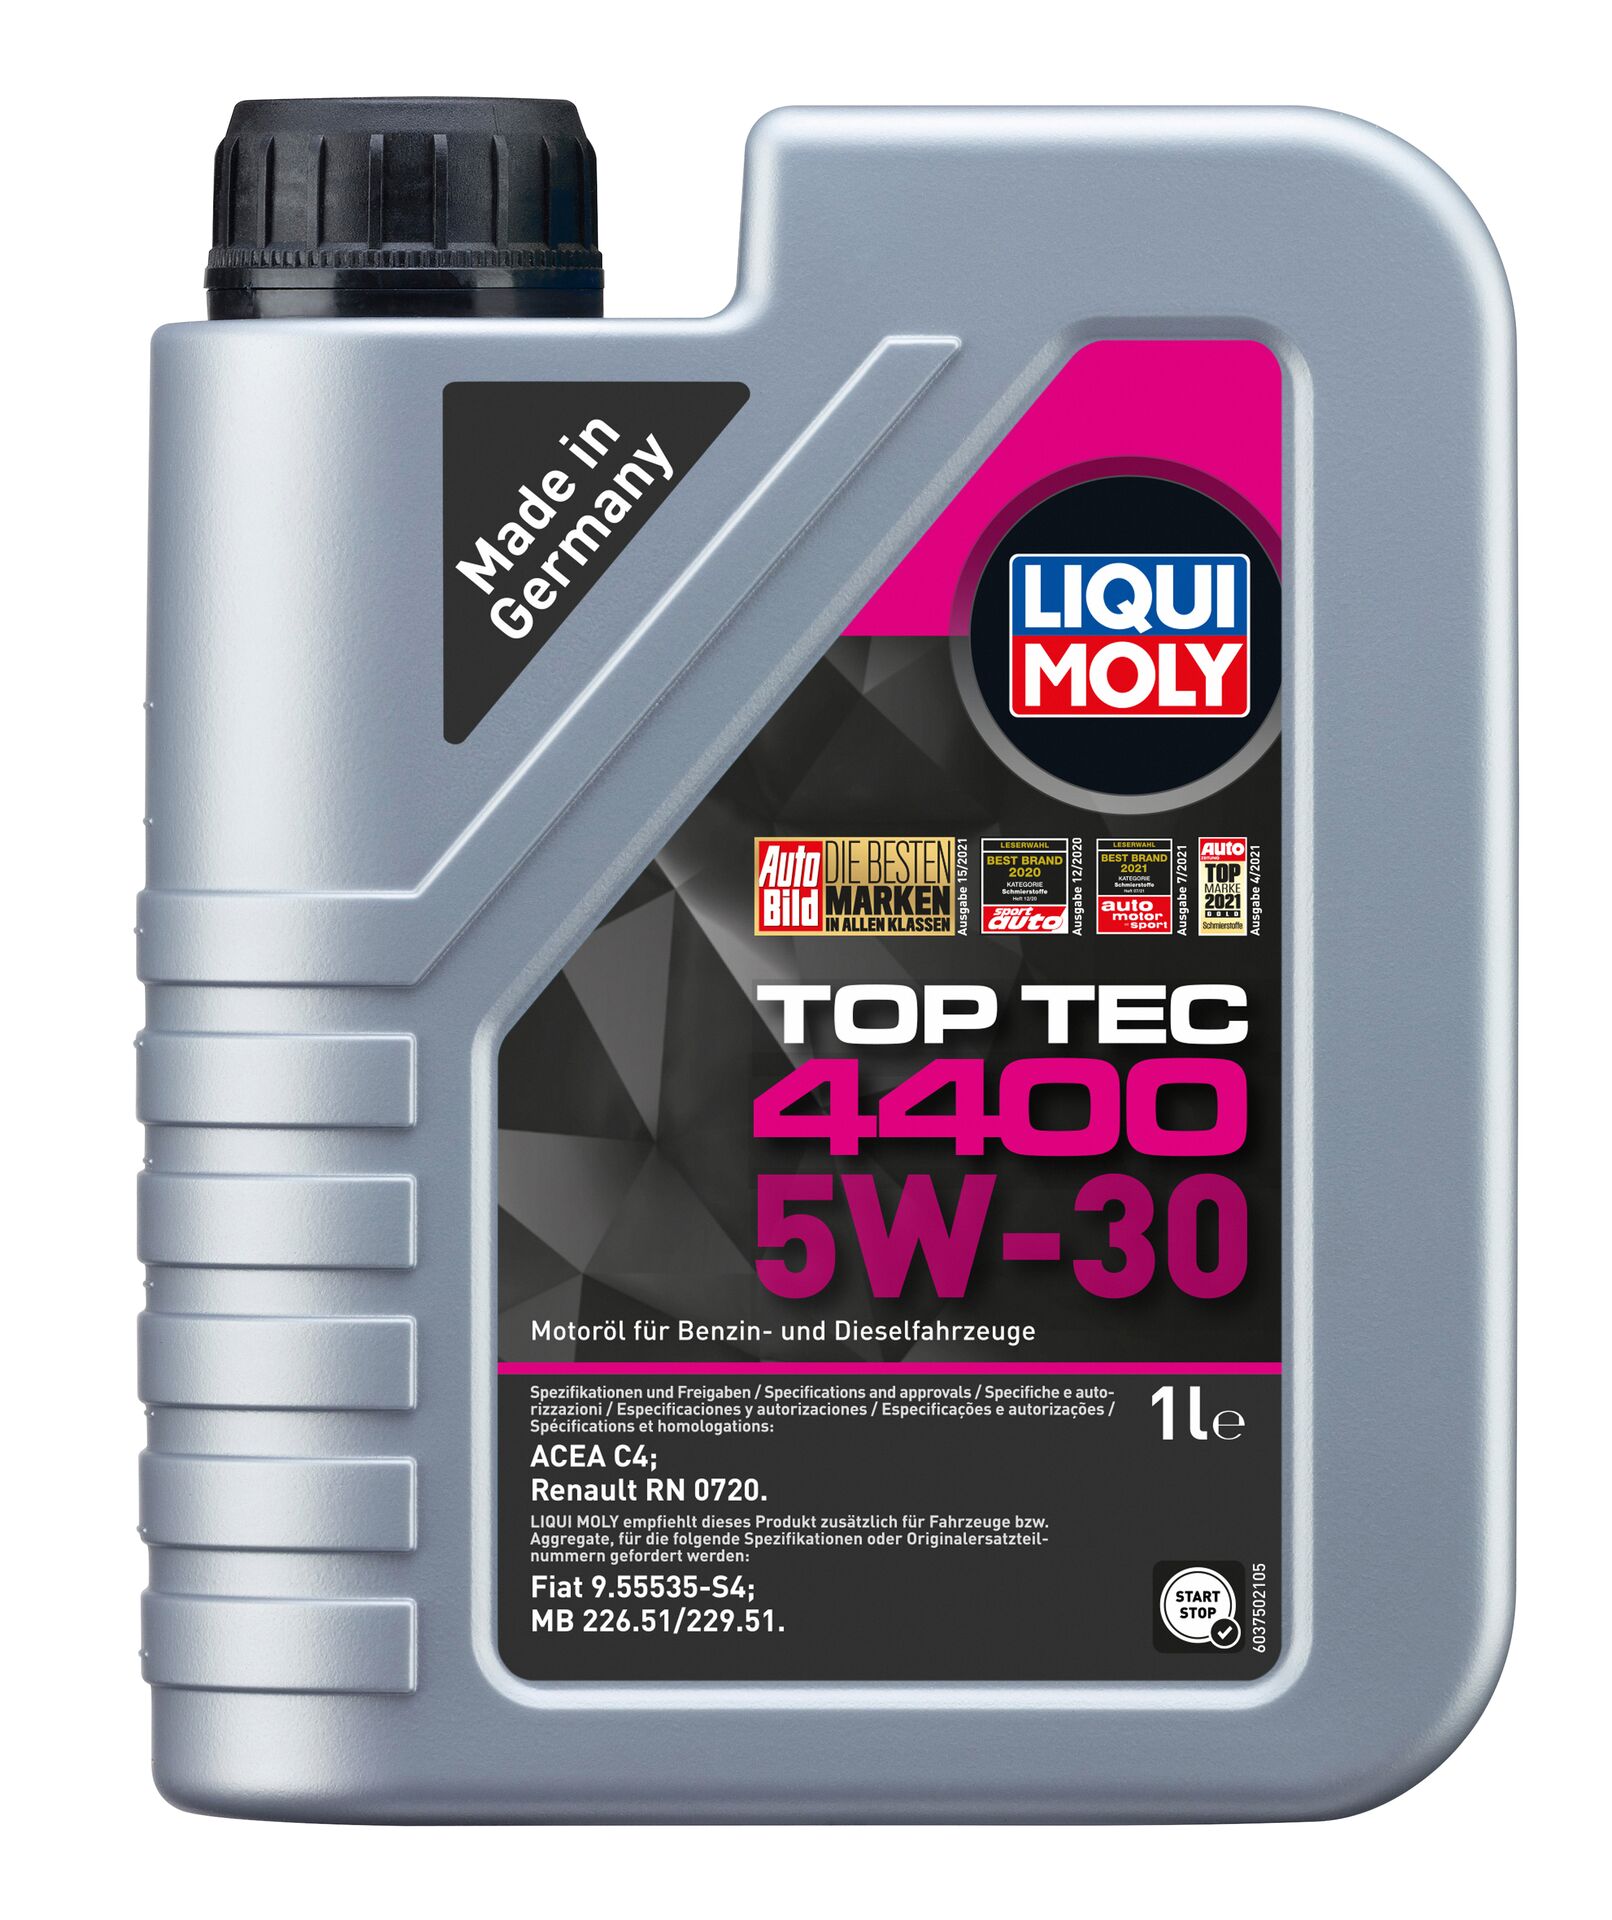 Top Tec 4400 5W30 - Liqui Moly